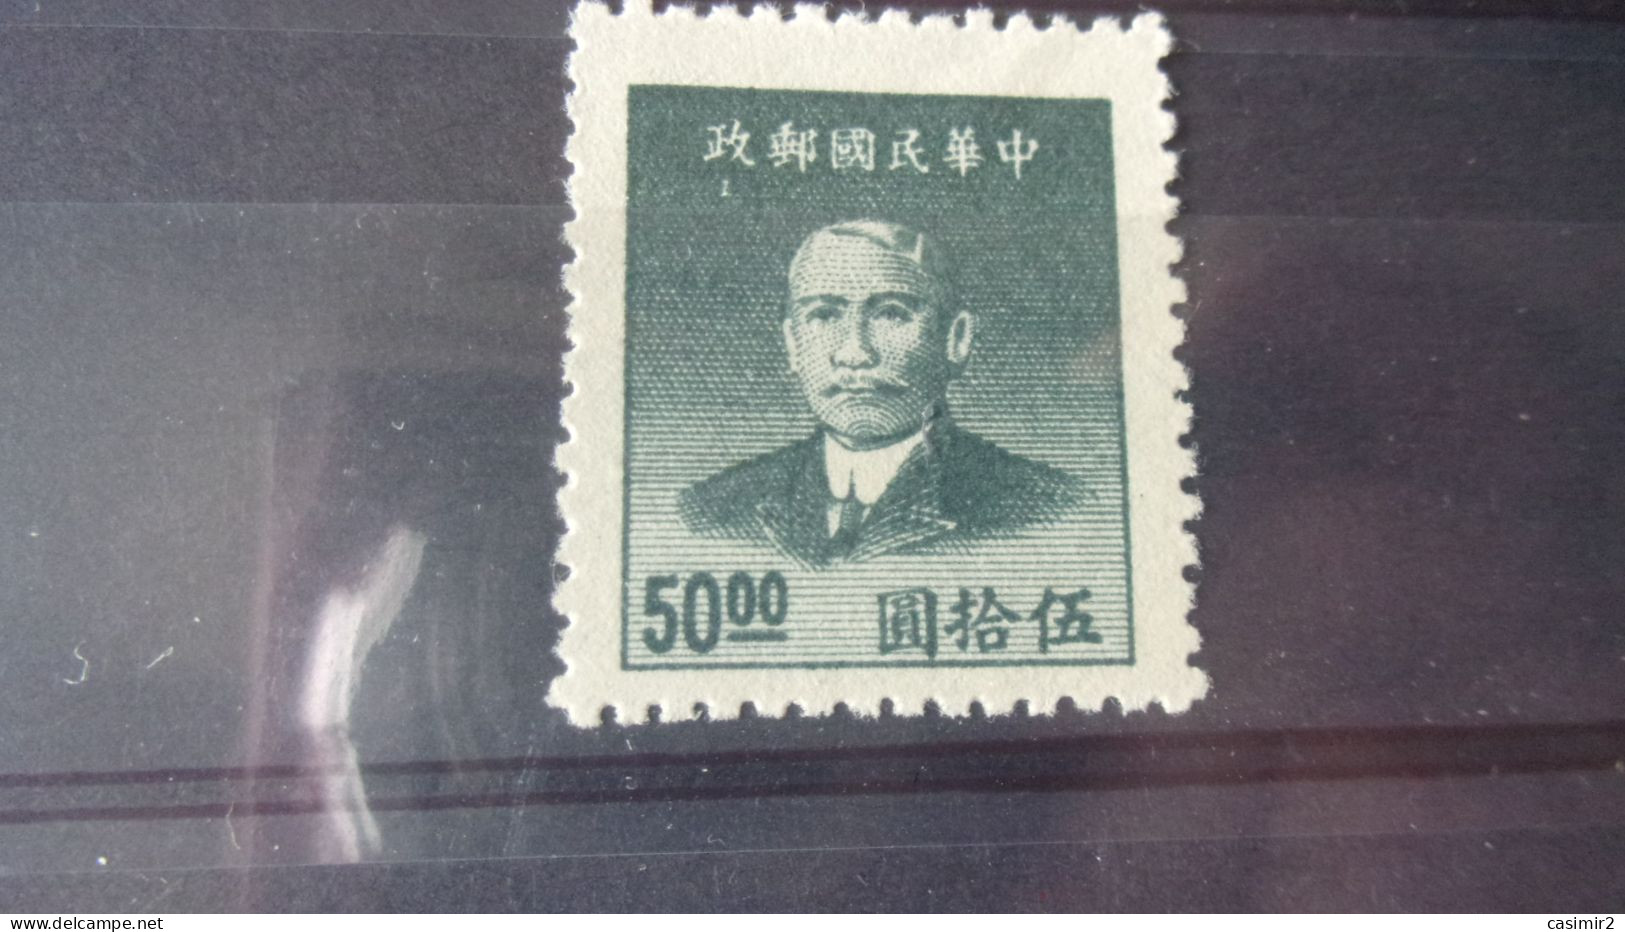 CHINE   YVERT N° 724 - 1912-1949 Republiek